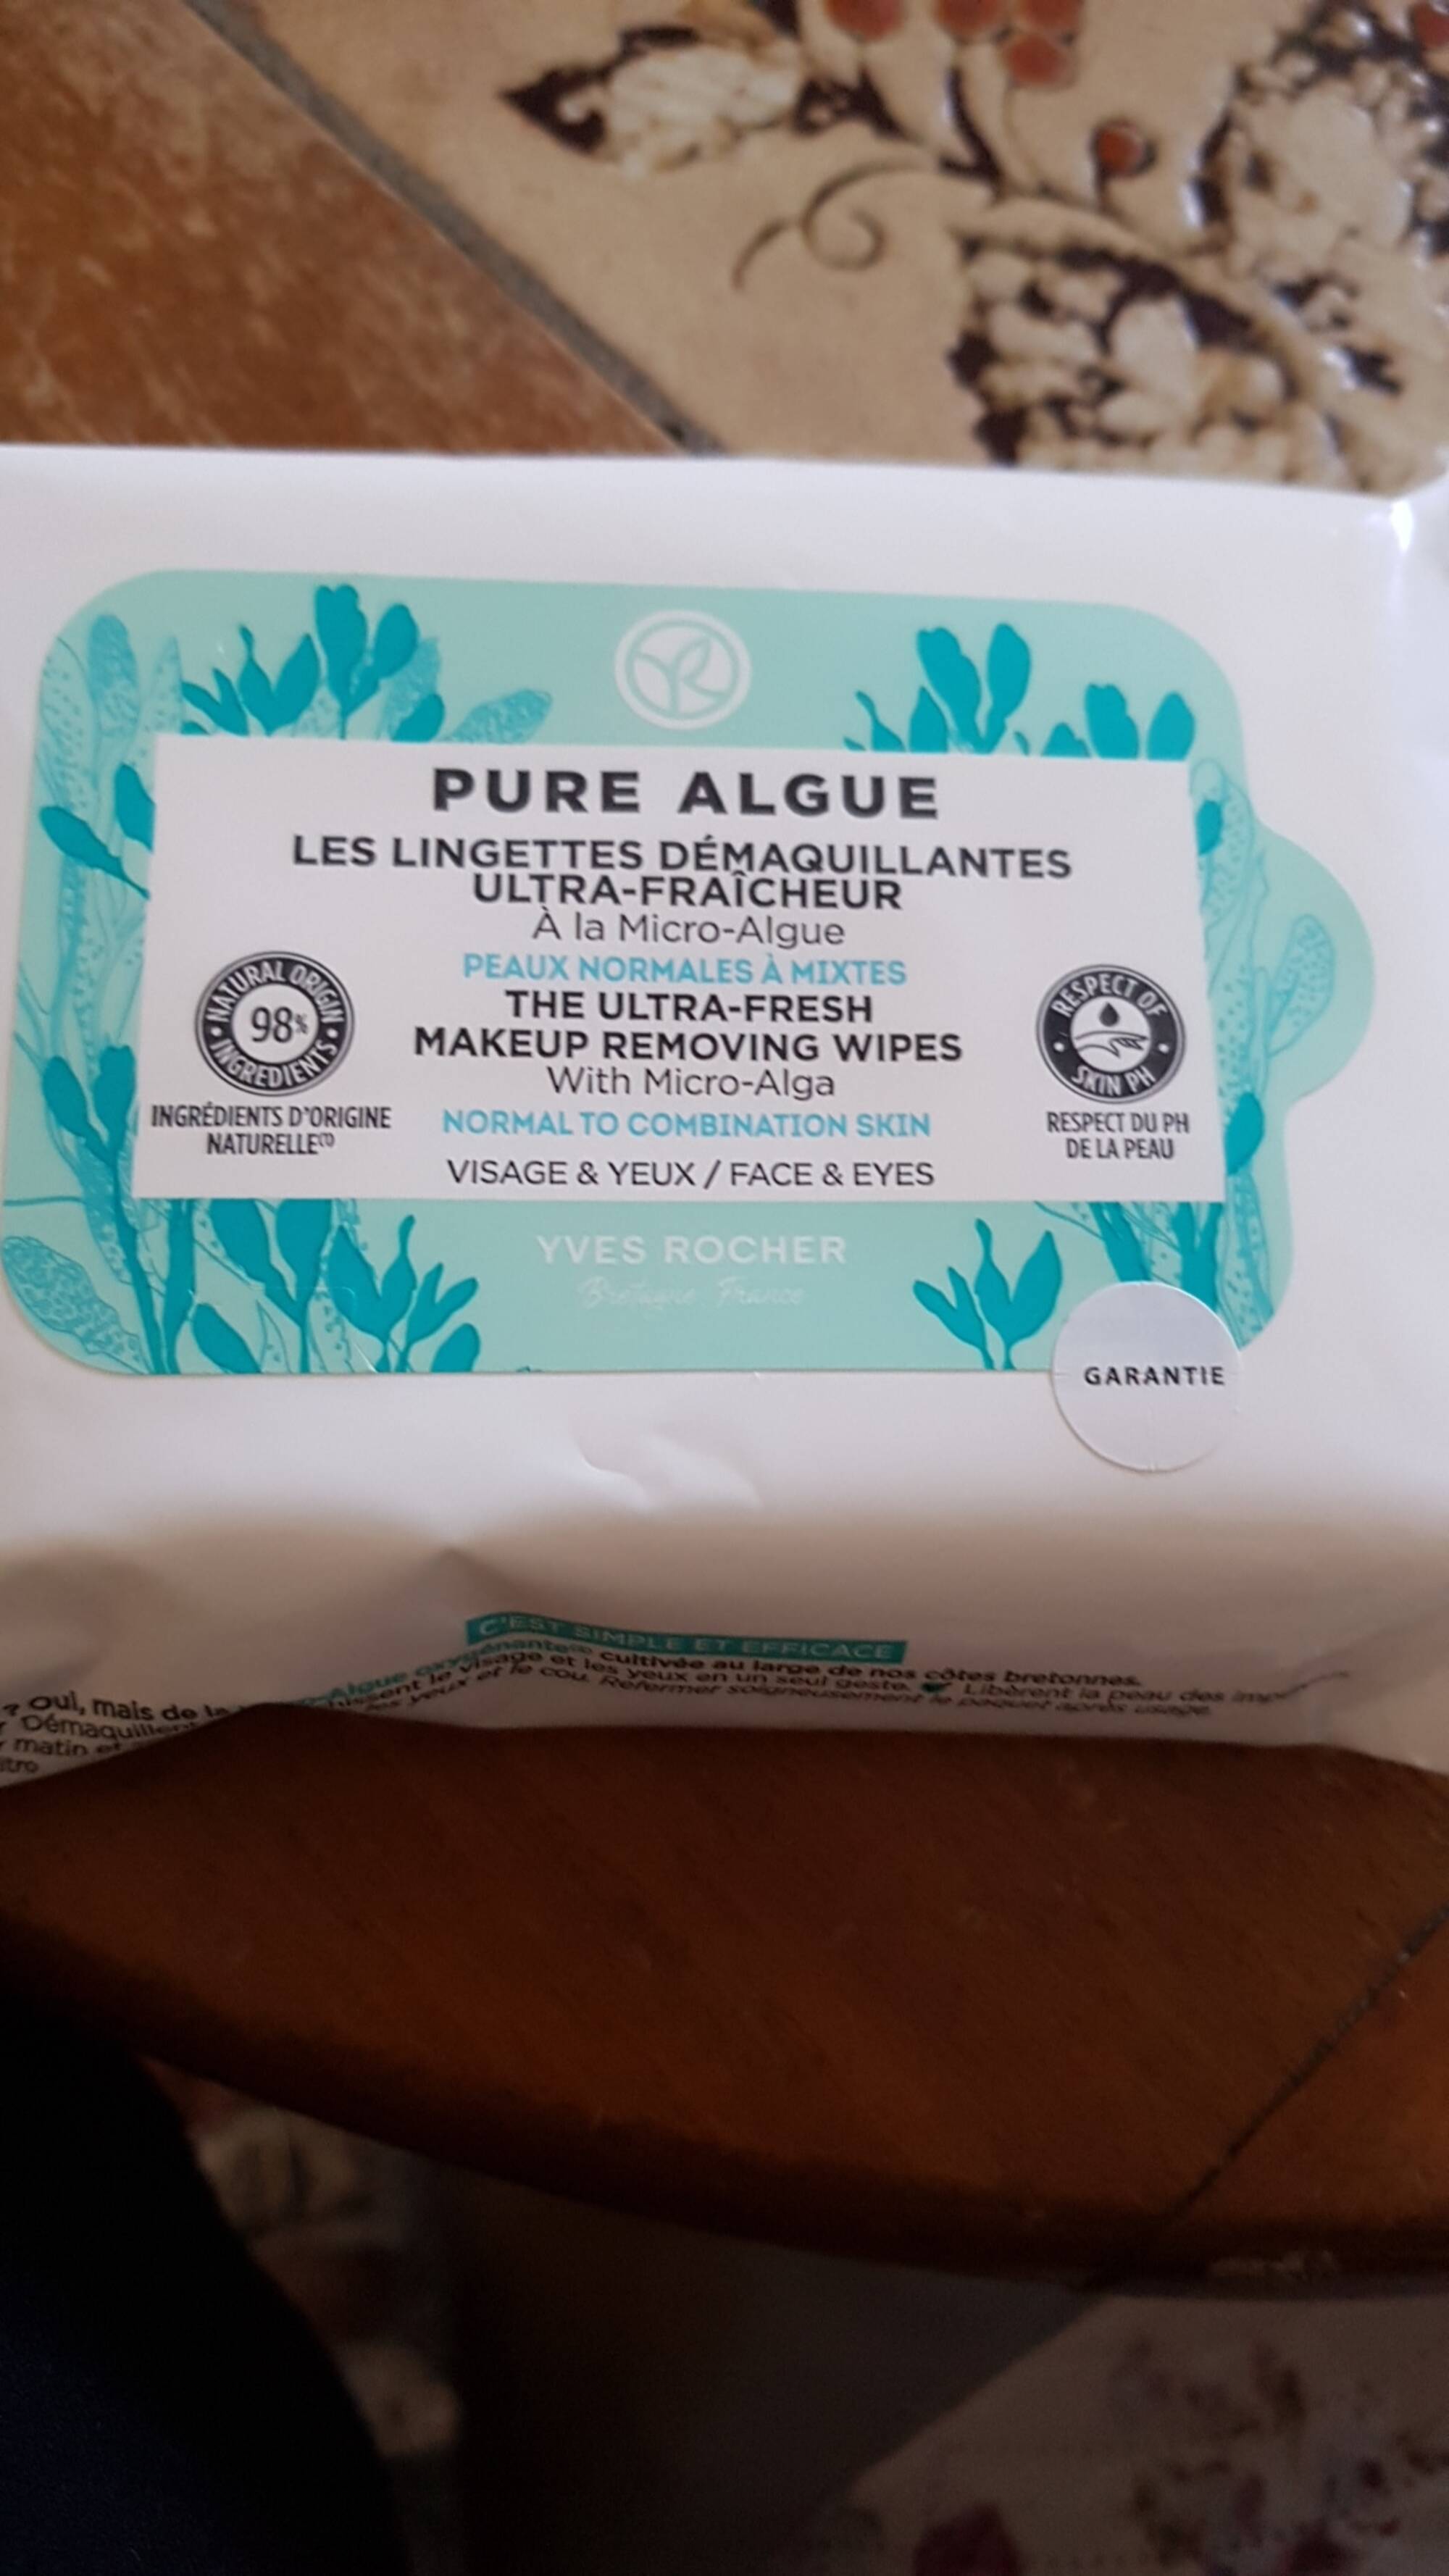 YVES ROCHER - Pure algue - Les lingettes démaquillantes ultra-fraîcheur